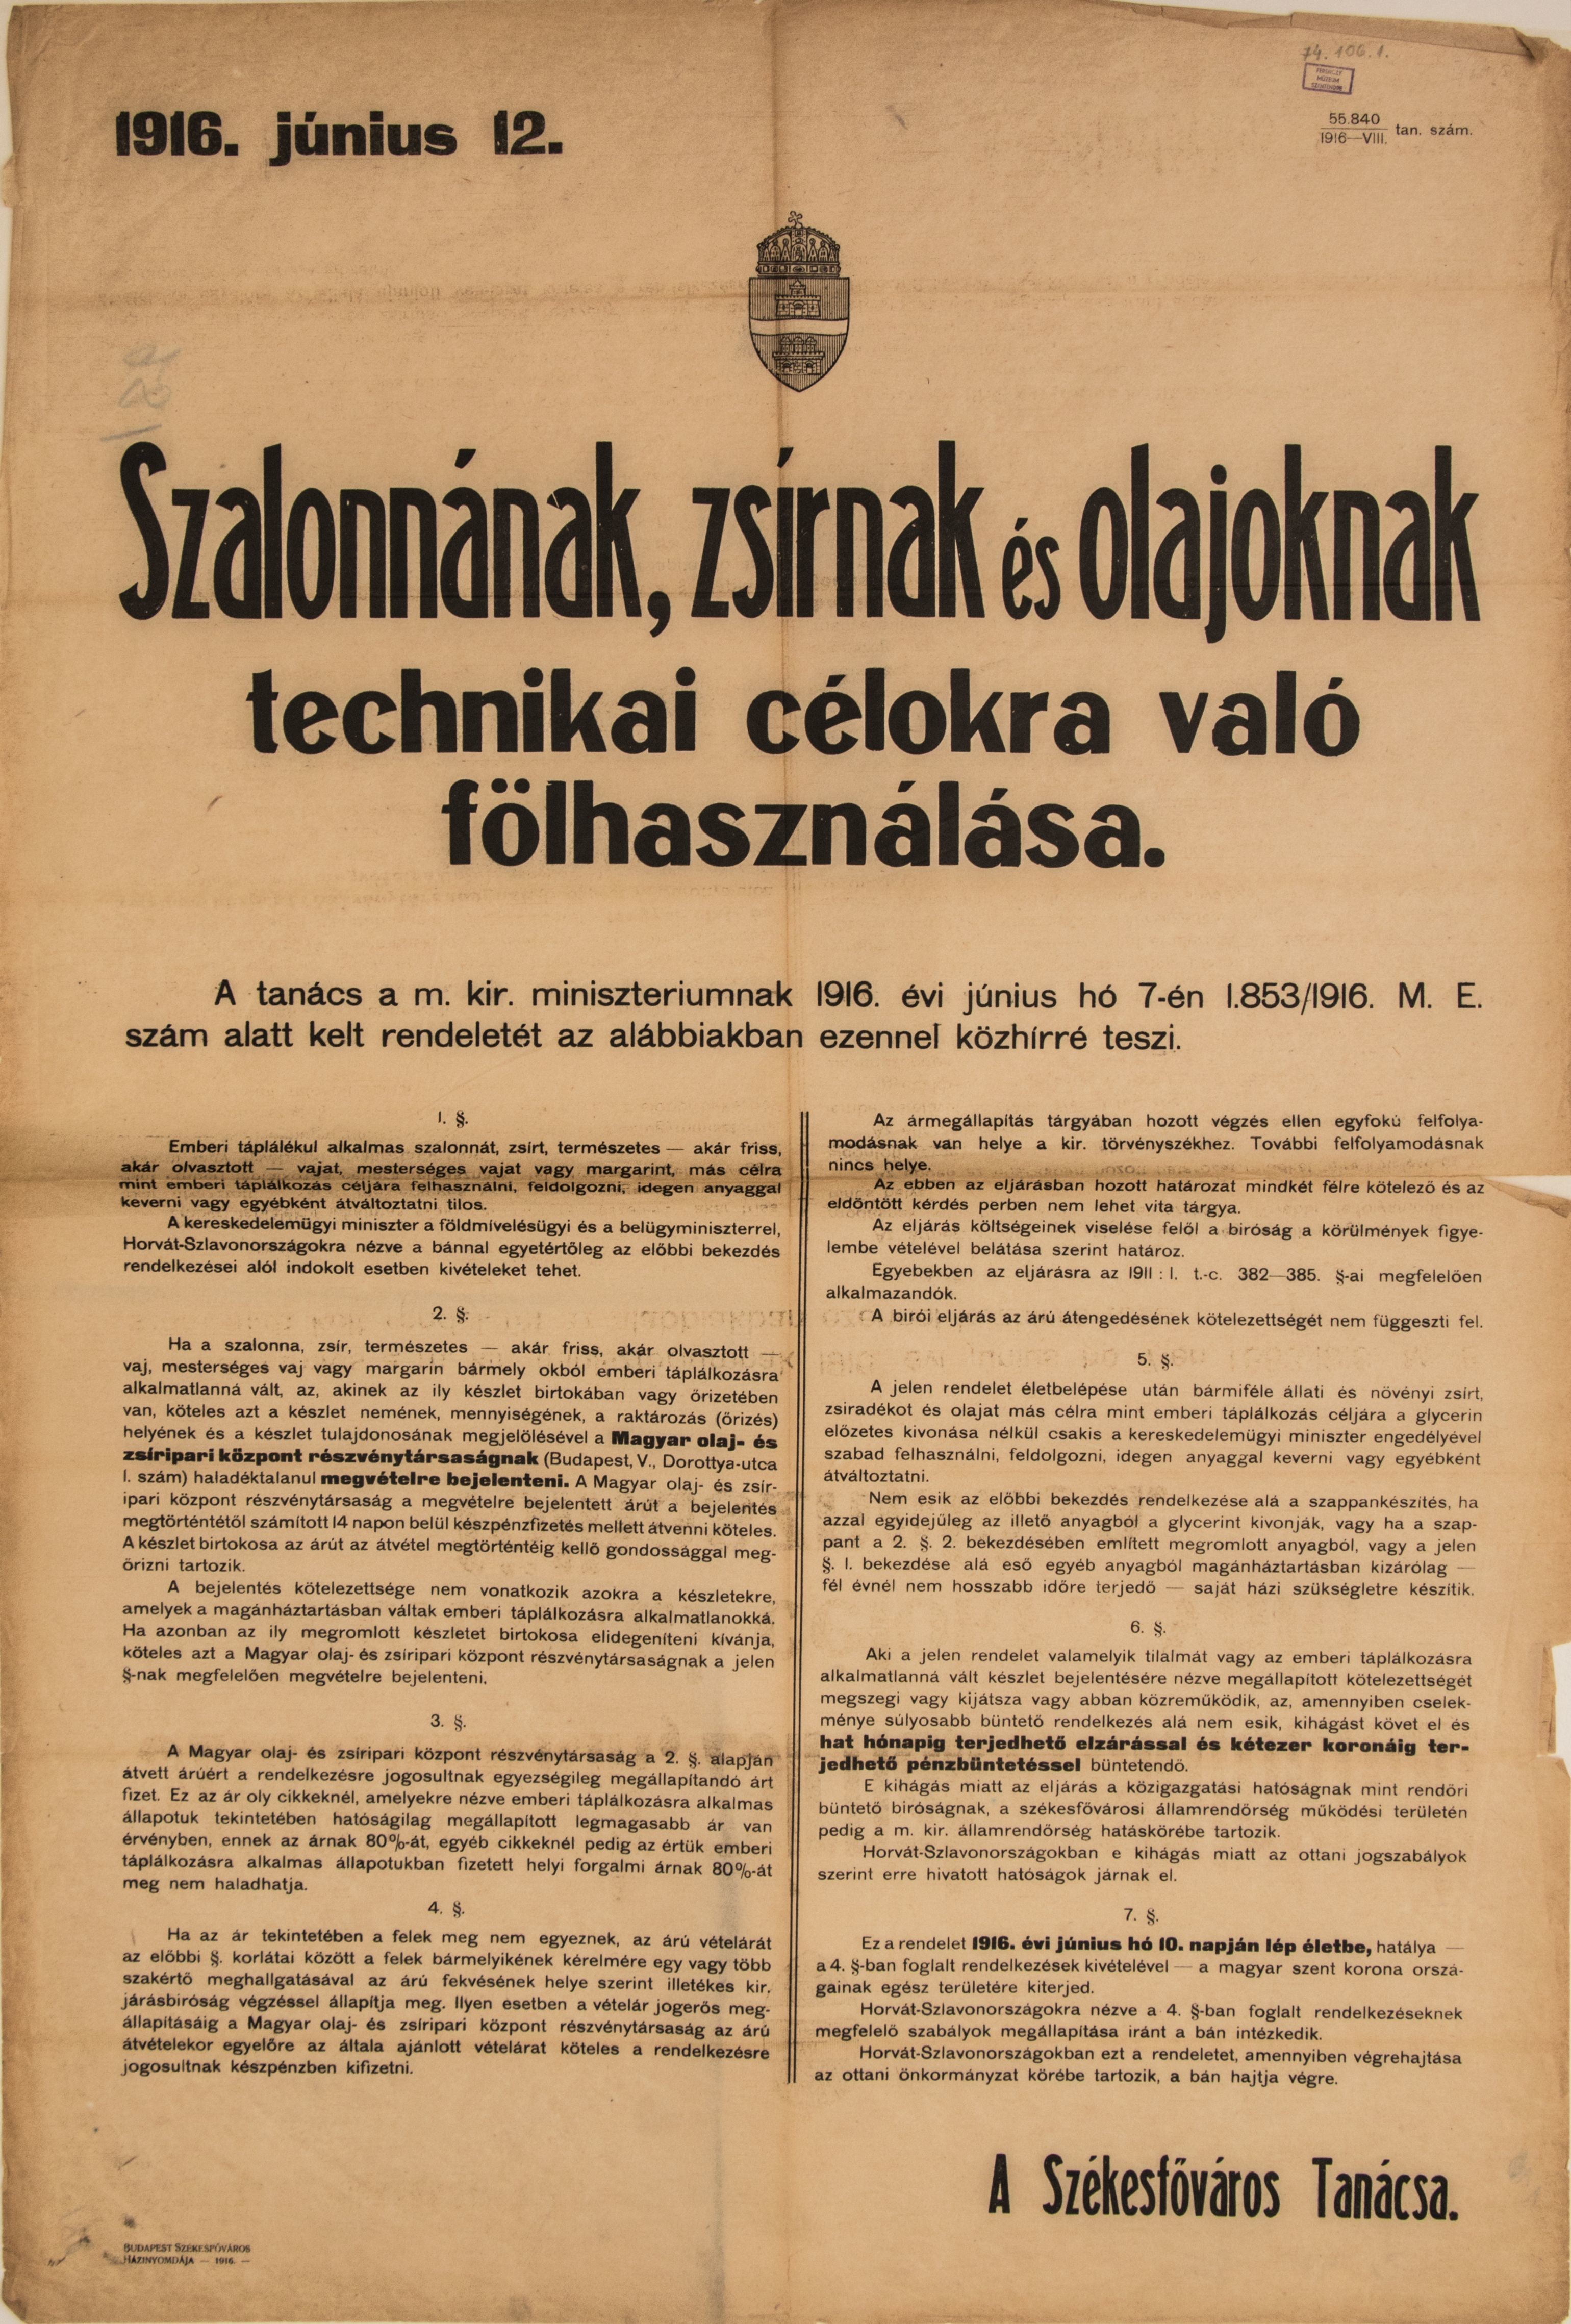 Szalonnának, zsírnak és olajnak technikai célra való felhasználásáról, 1916.06.12. (Ferenczy Múzeumi Centrum CC BY-NC-SA)